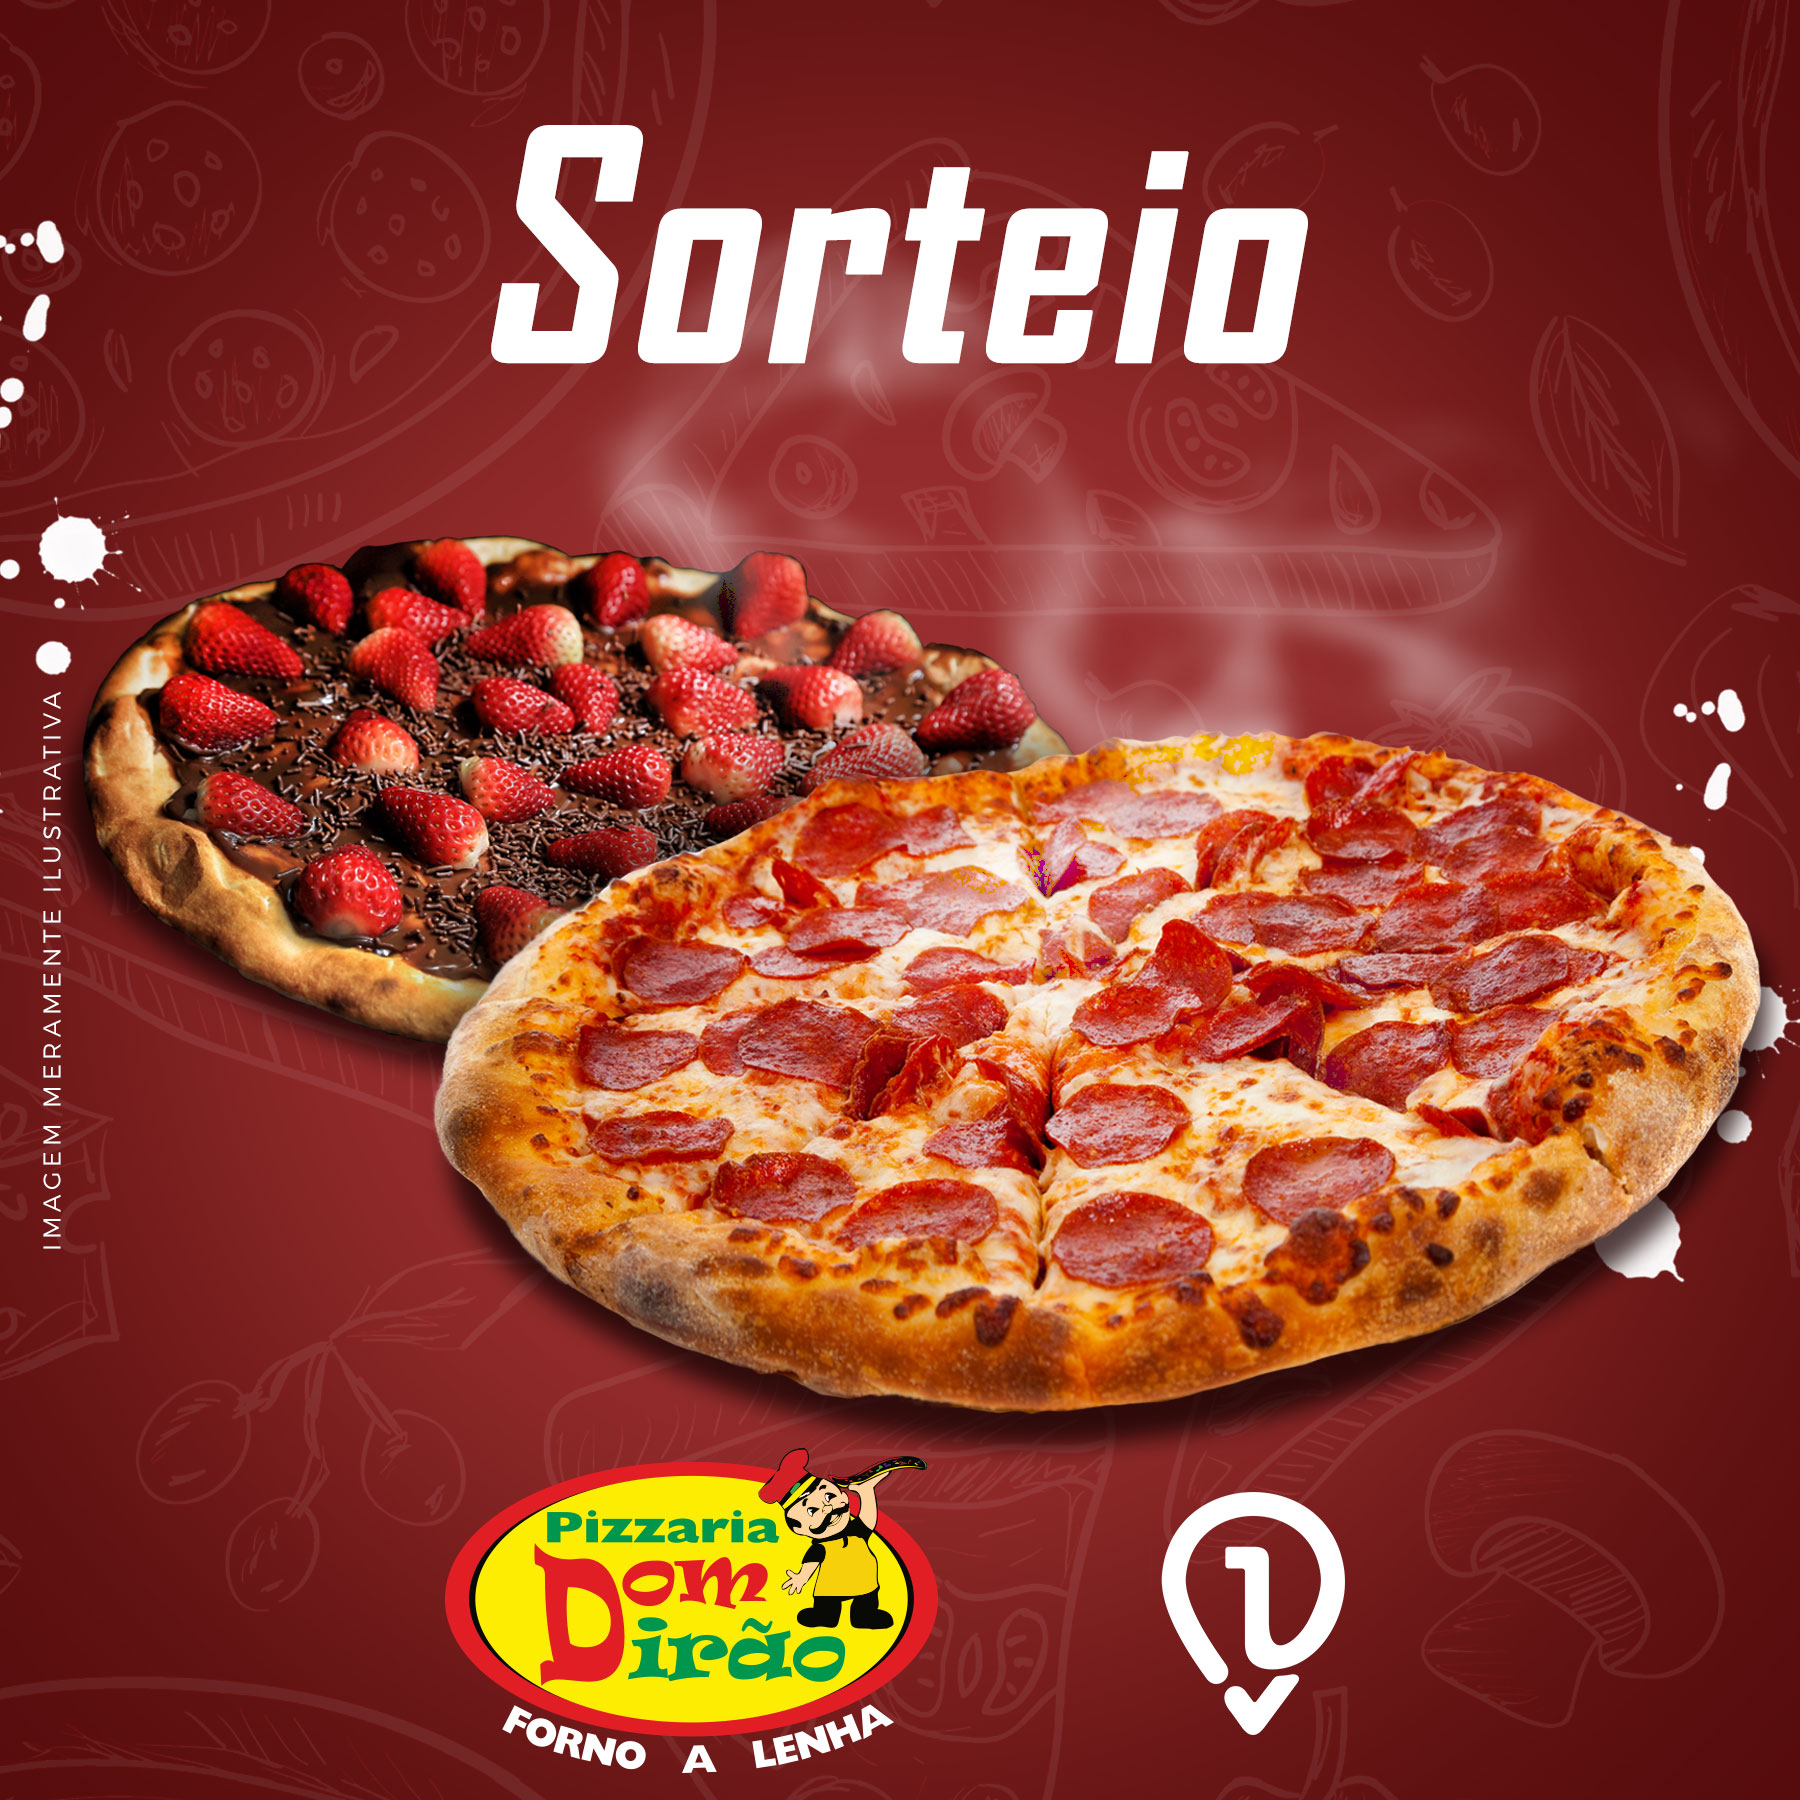 DN1 vai sortear duas pizzas Dom Dirão; confira o regulamento